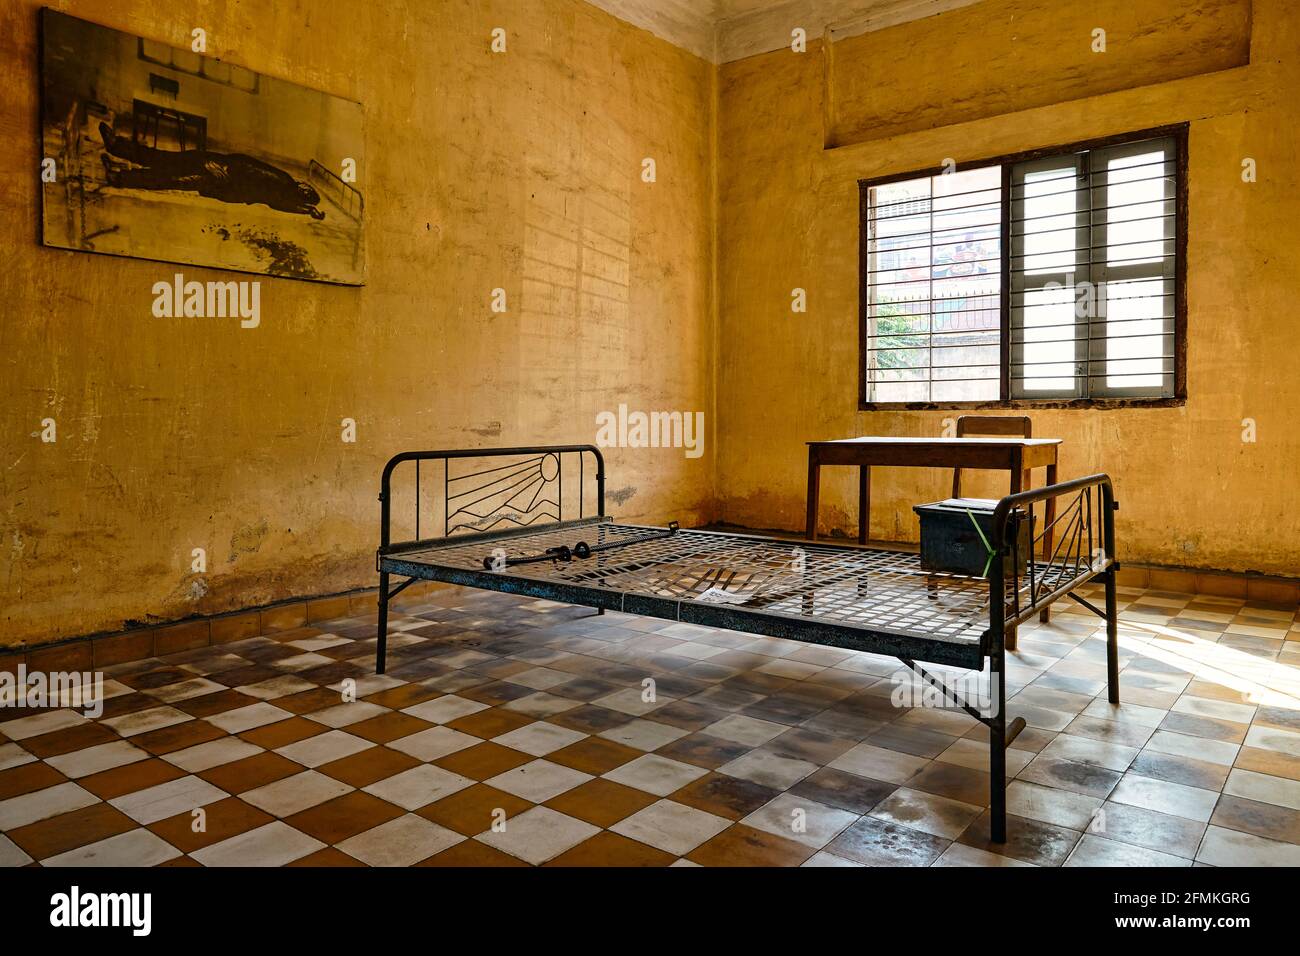 Das Gefängnis der Folterkammer von S21 Tuol Sleng aus dem Khmer Rouge in Phnom Penh Kambodscha Stockfoto